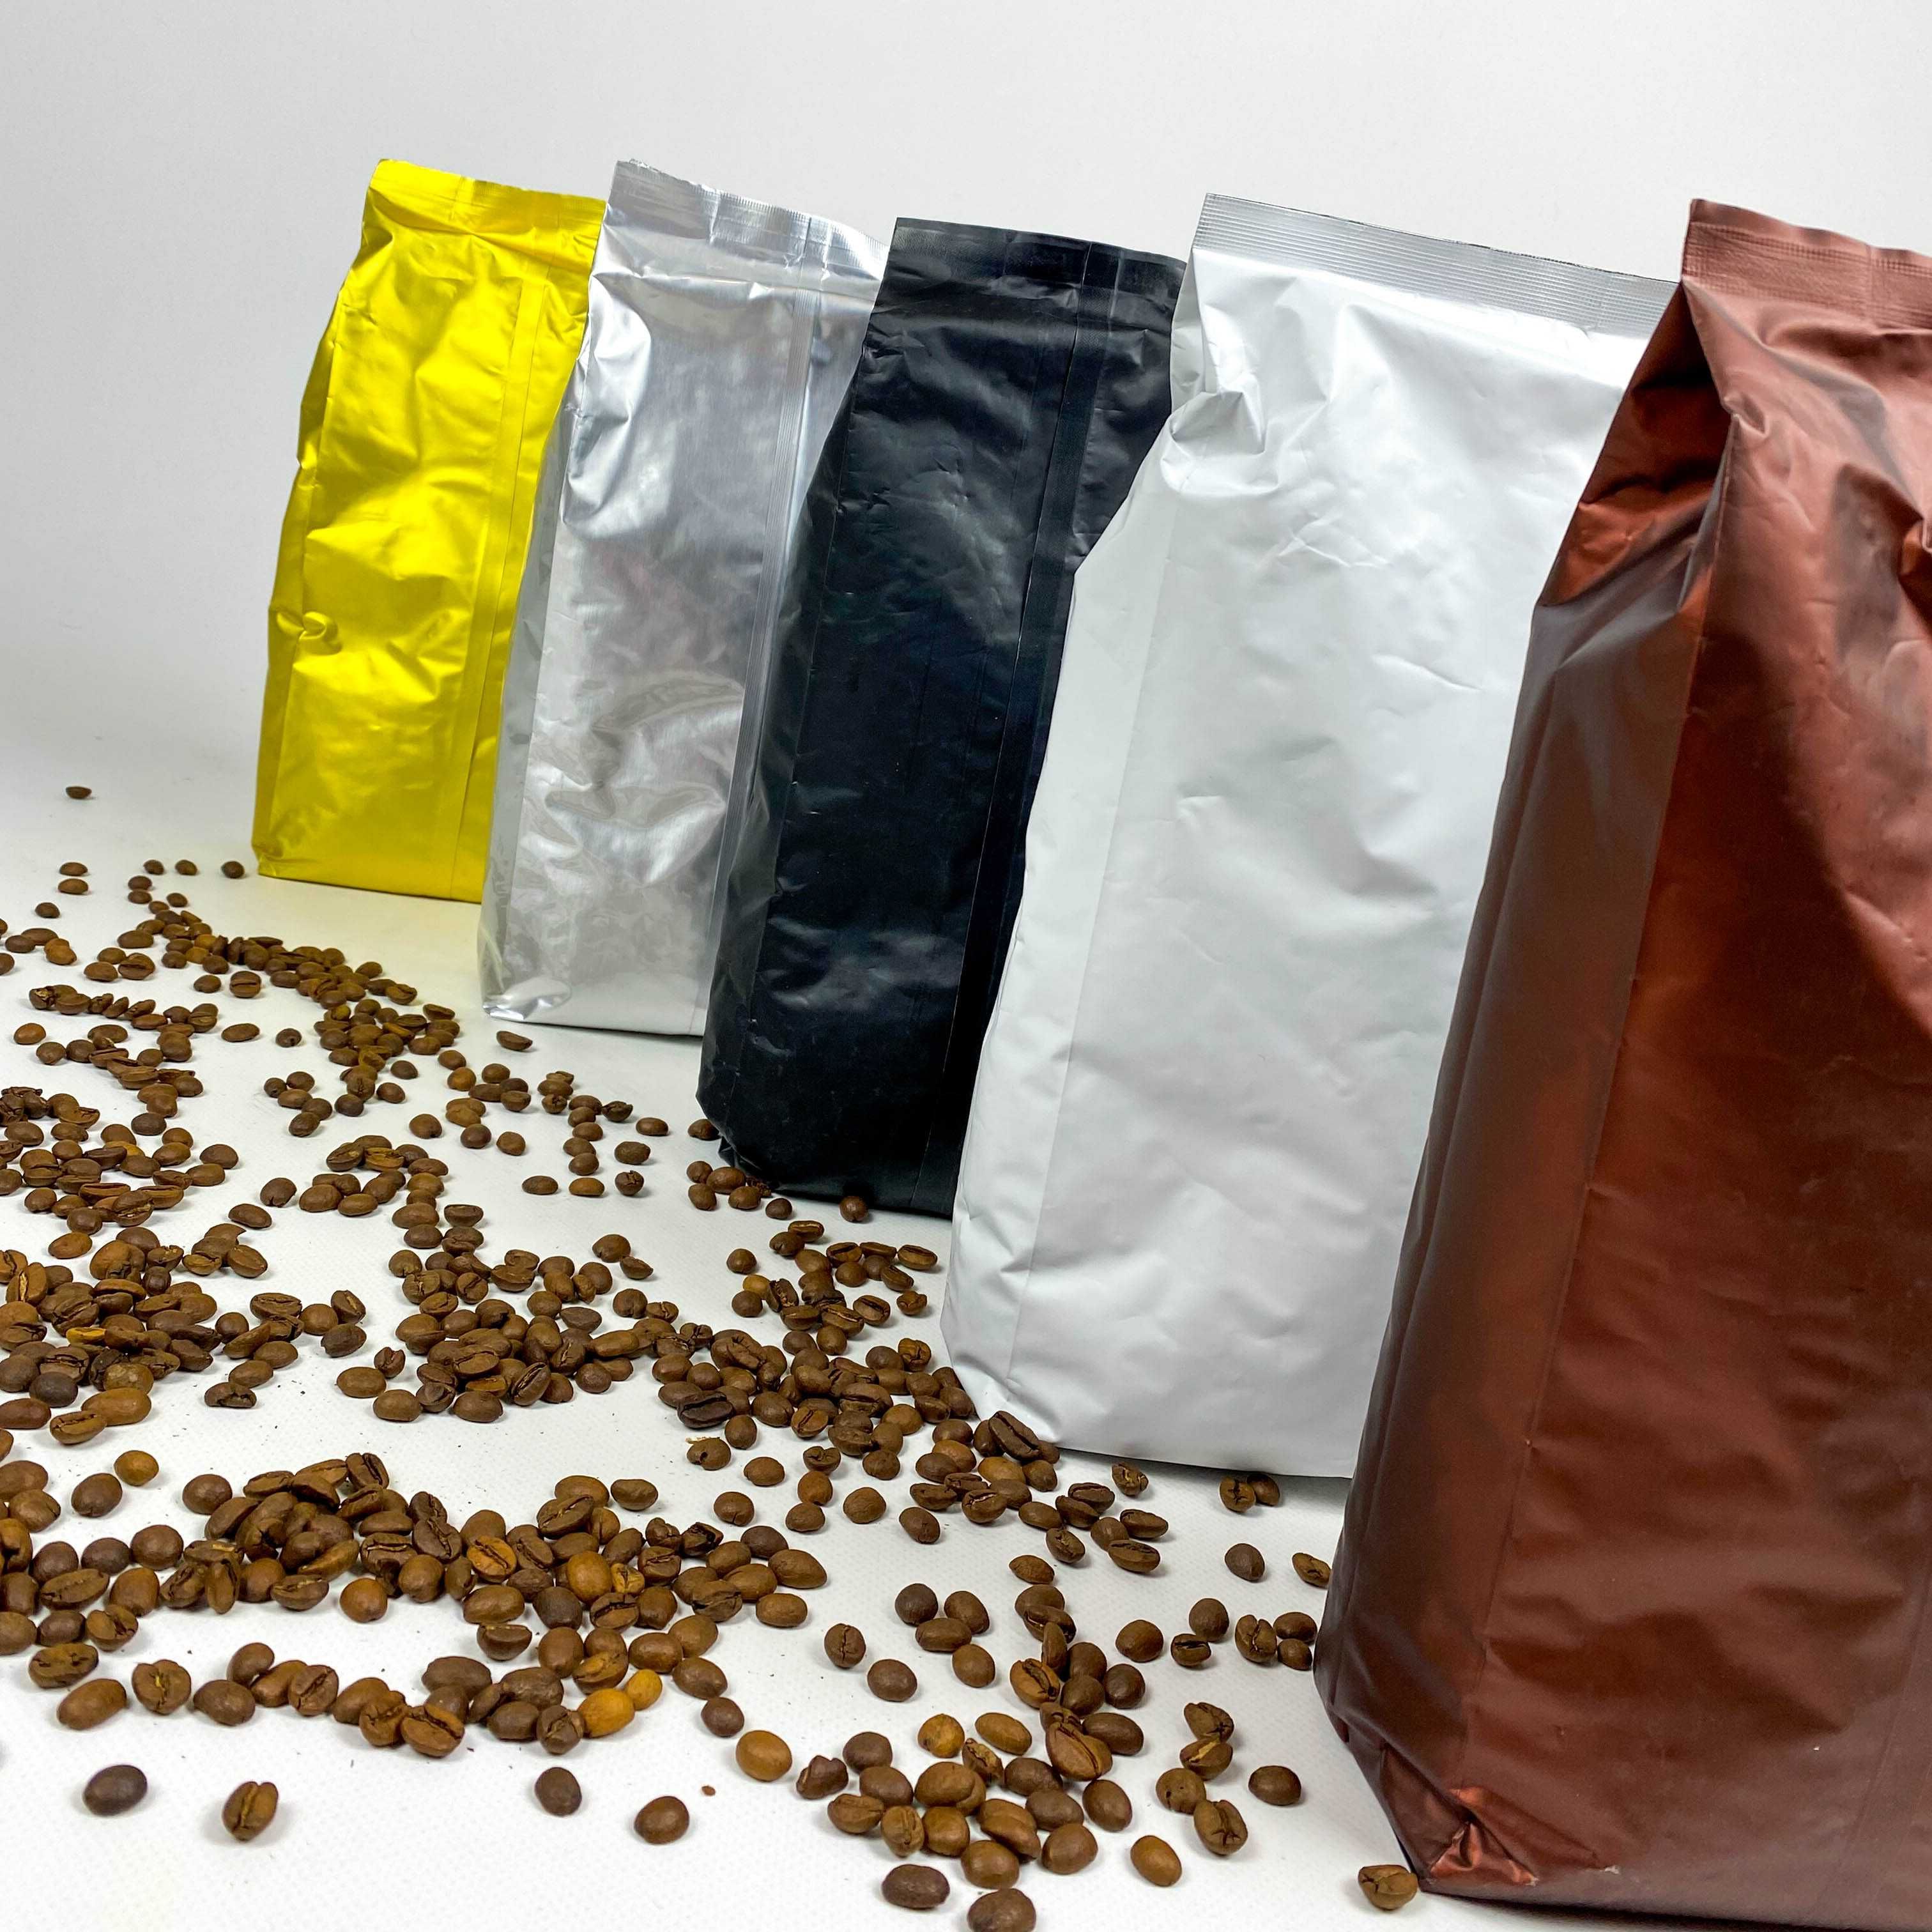 АКЦІЯ! Найвища якість кавових зерен за НАЙНИЖЧИМИ цінами!Кава в зернах